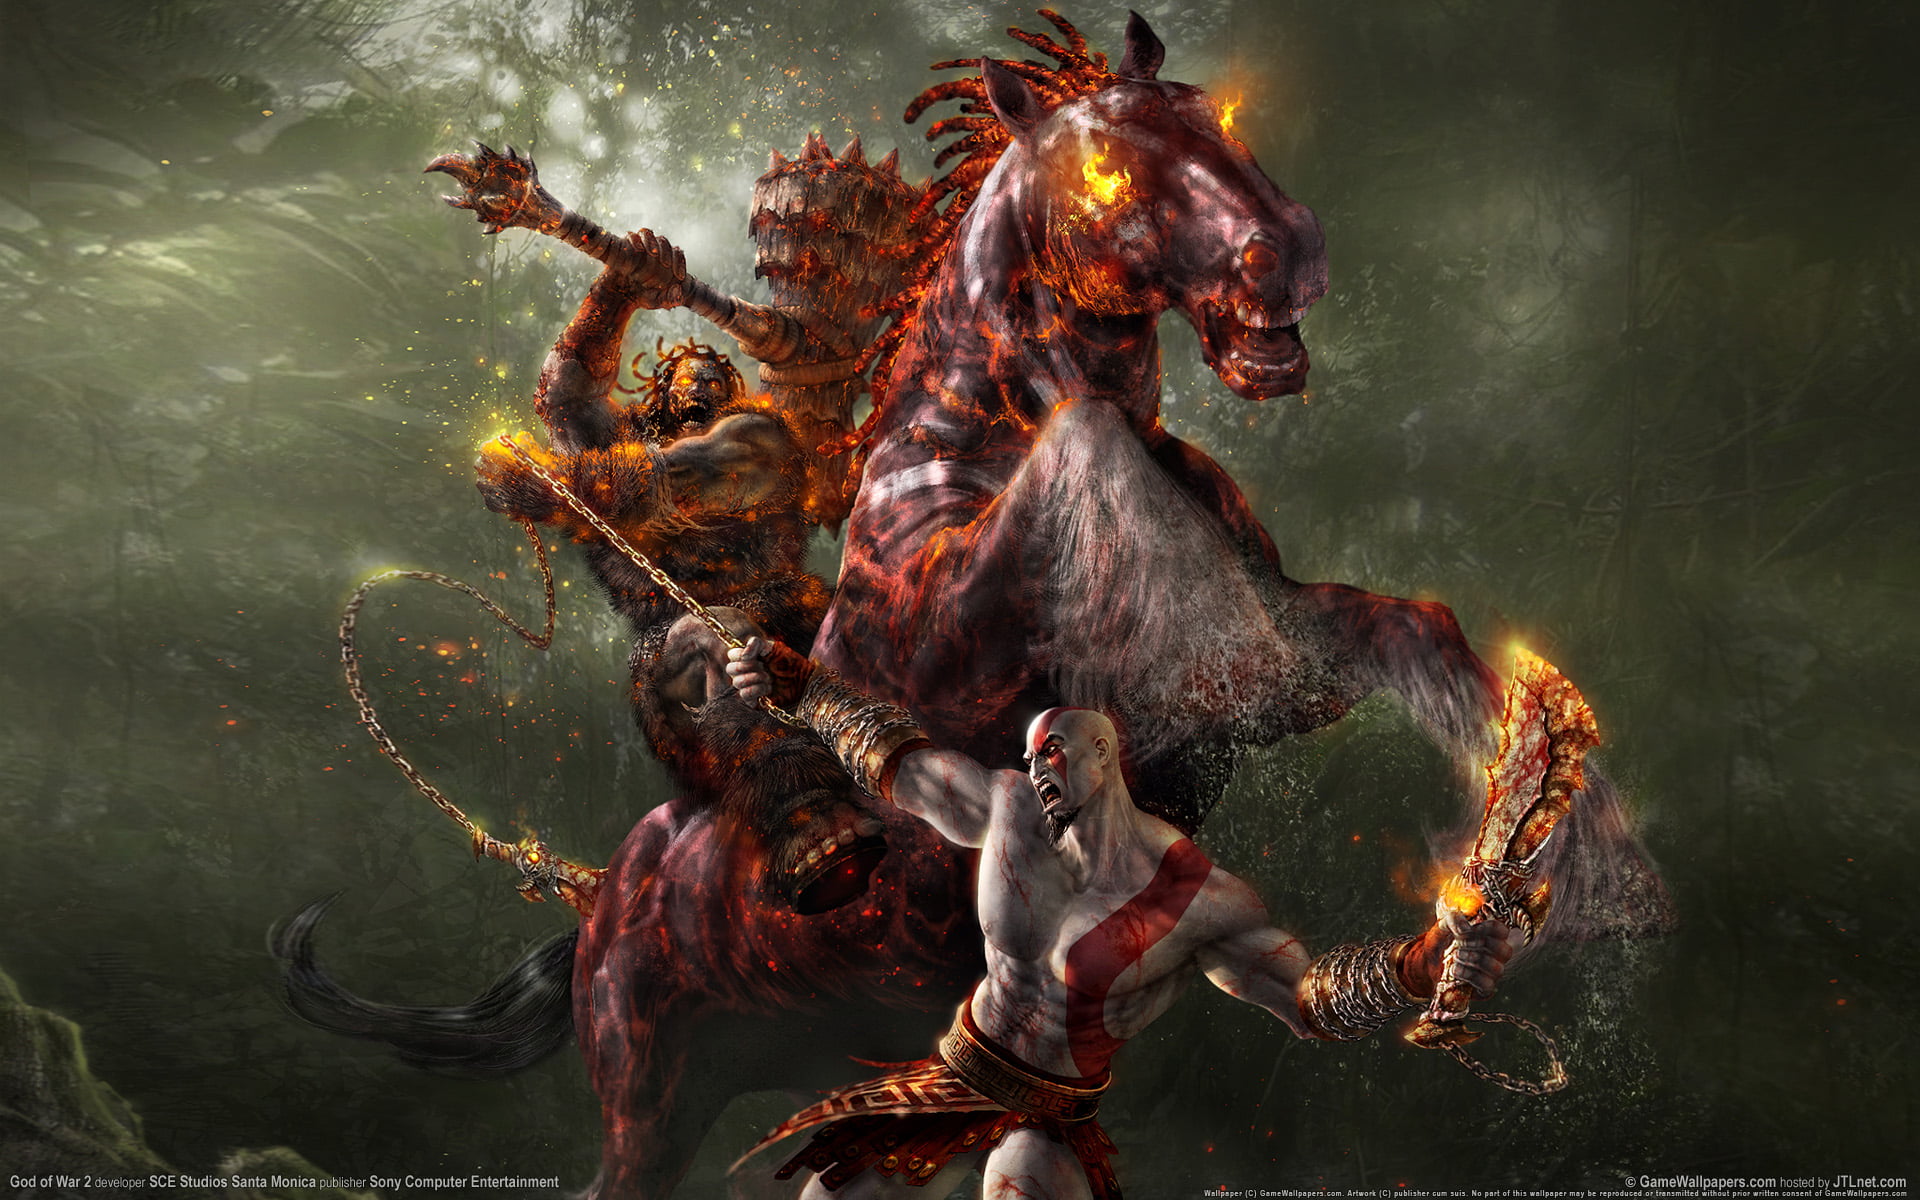 God of War wallpaper, horse, chain, rider, battle, God of war 2